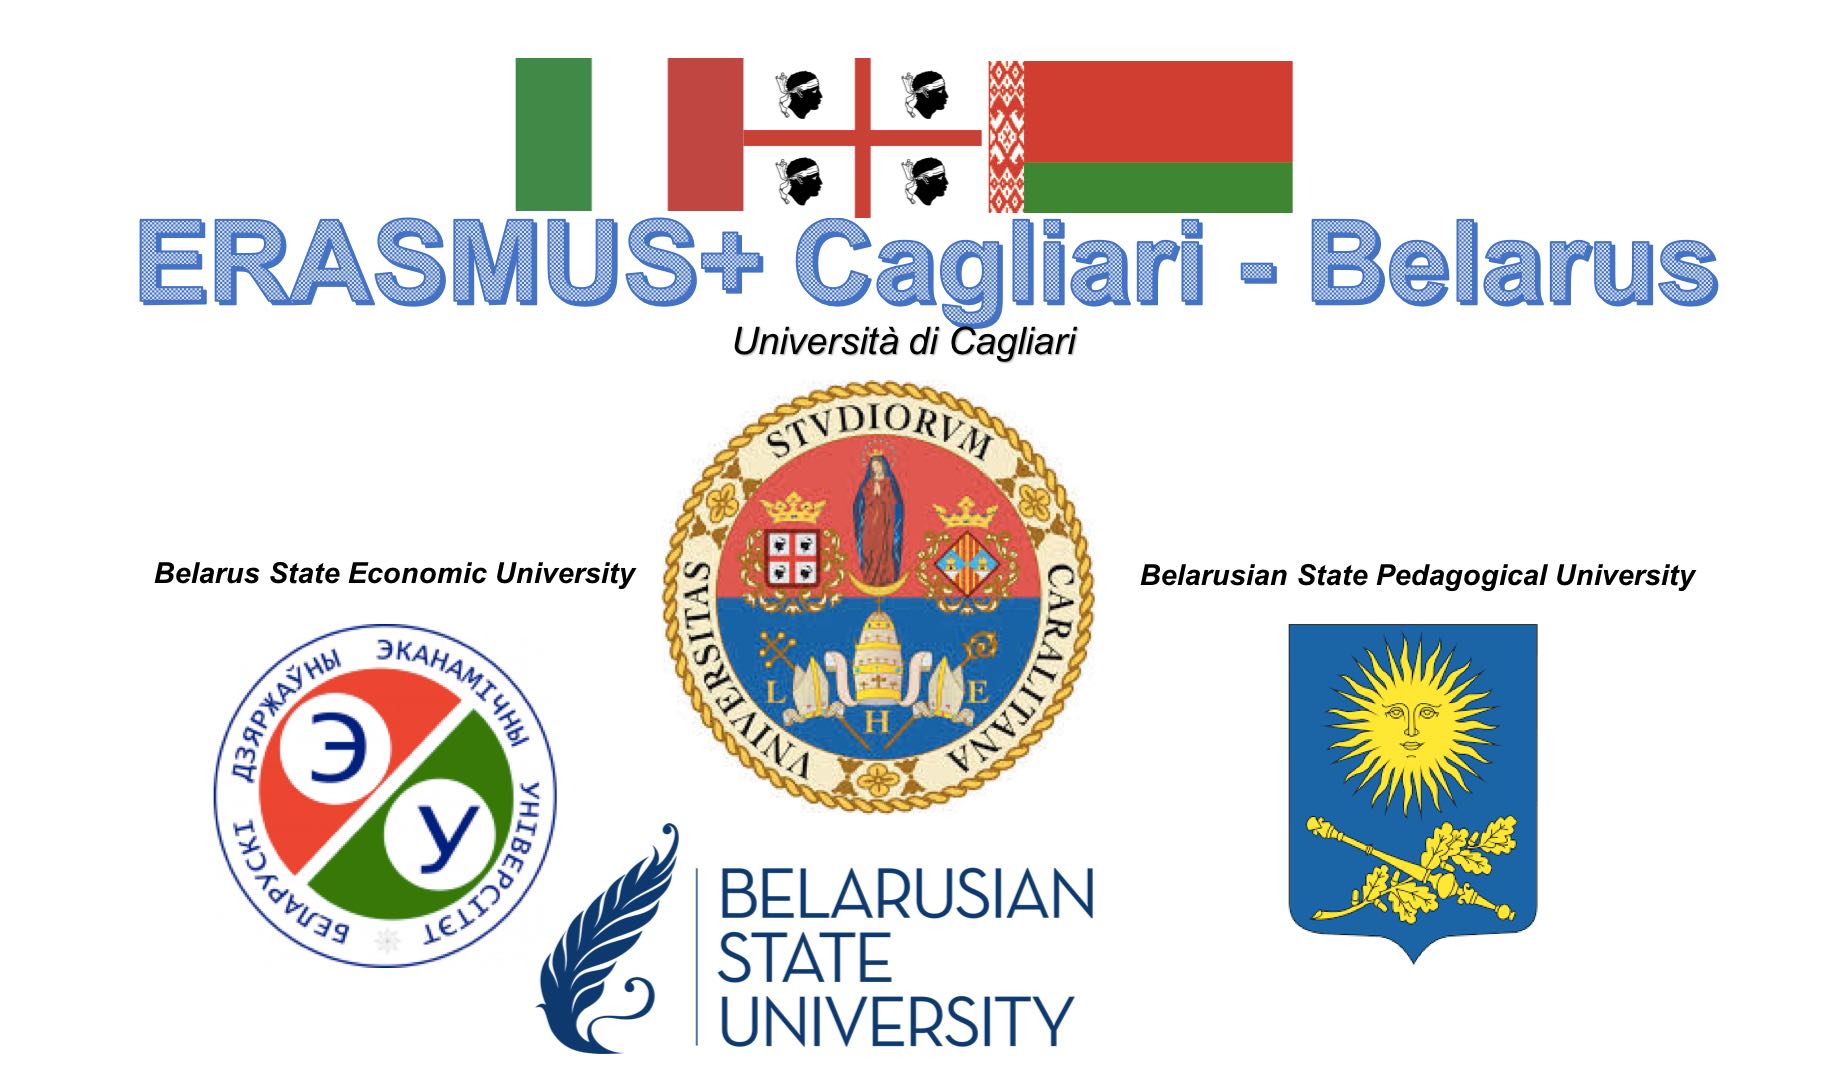 Università di Cagliari, avvio progetto Erasmus+ con la Bielorussia